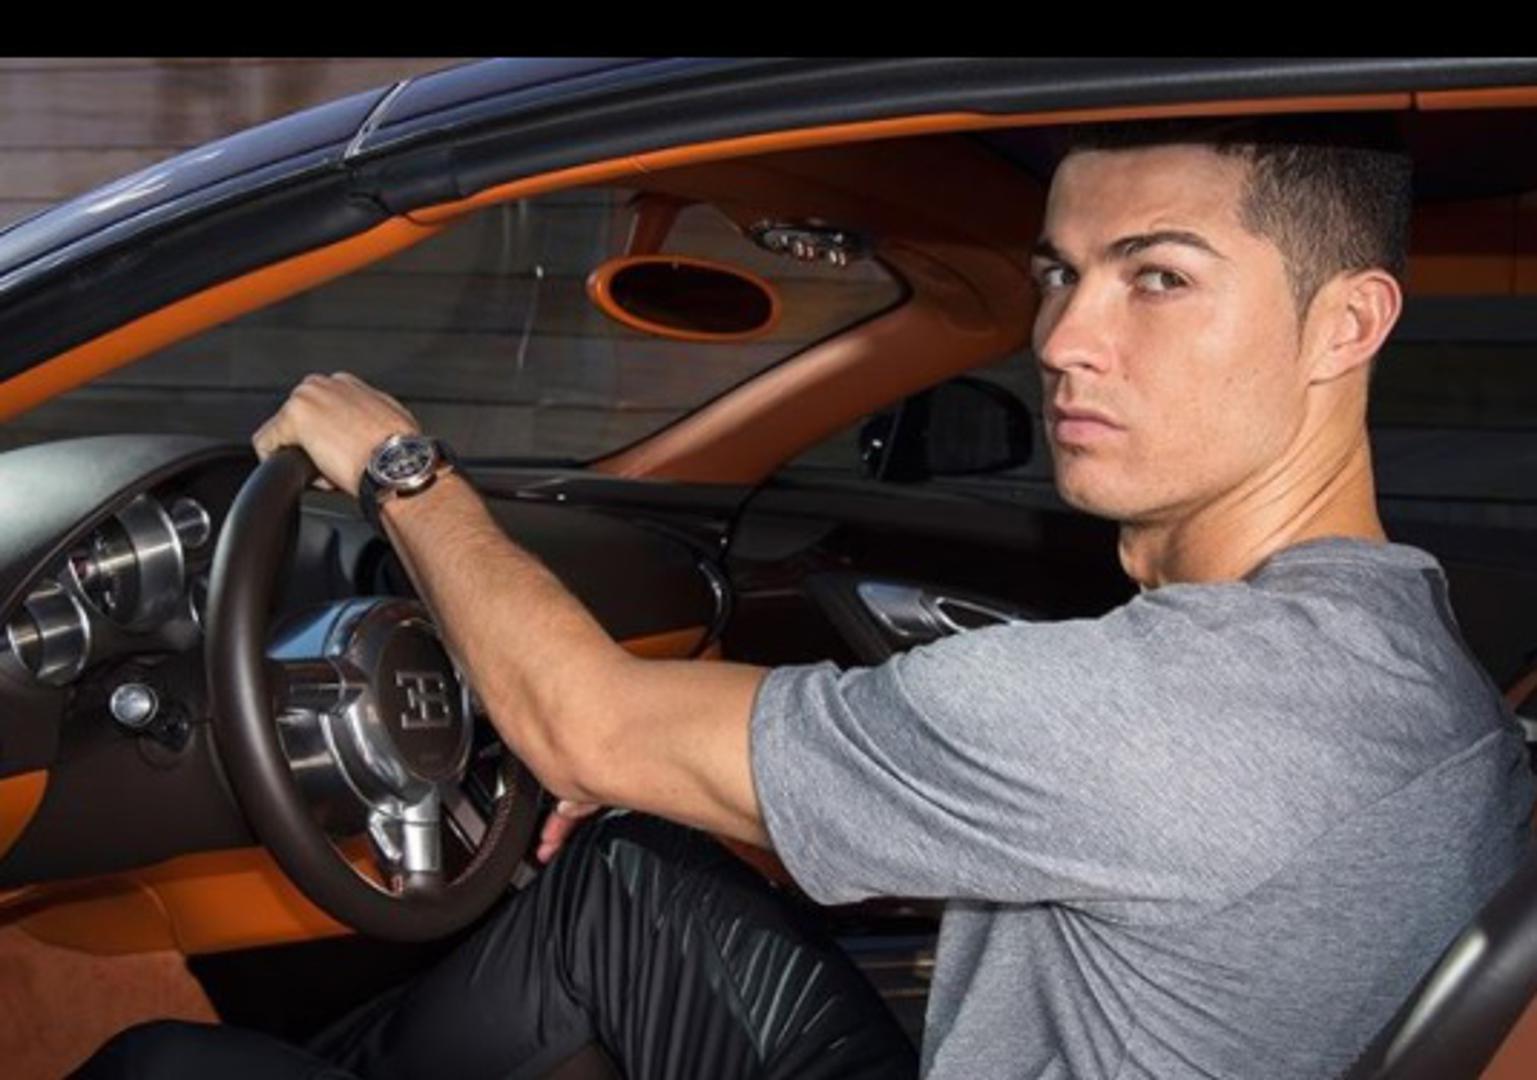 Realova nogometna zvijezda Cristiano Ronaldo voli skupe stvari. Tjednom plaćom od 2,2 milijuna kuna može si priuštiti gotovo sve, a posebna su mu strast automobili. Često se fotografira pokraj svojih metalnih ljubimaca na četiri kotača. Ovo su primjerci koje ima u svojoj garaži.